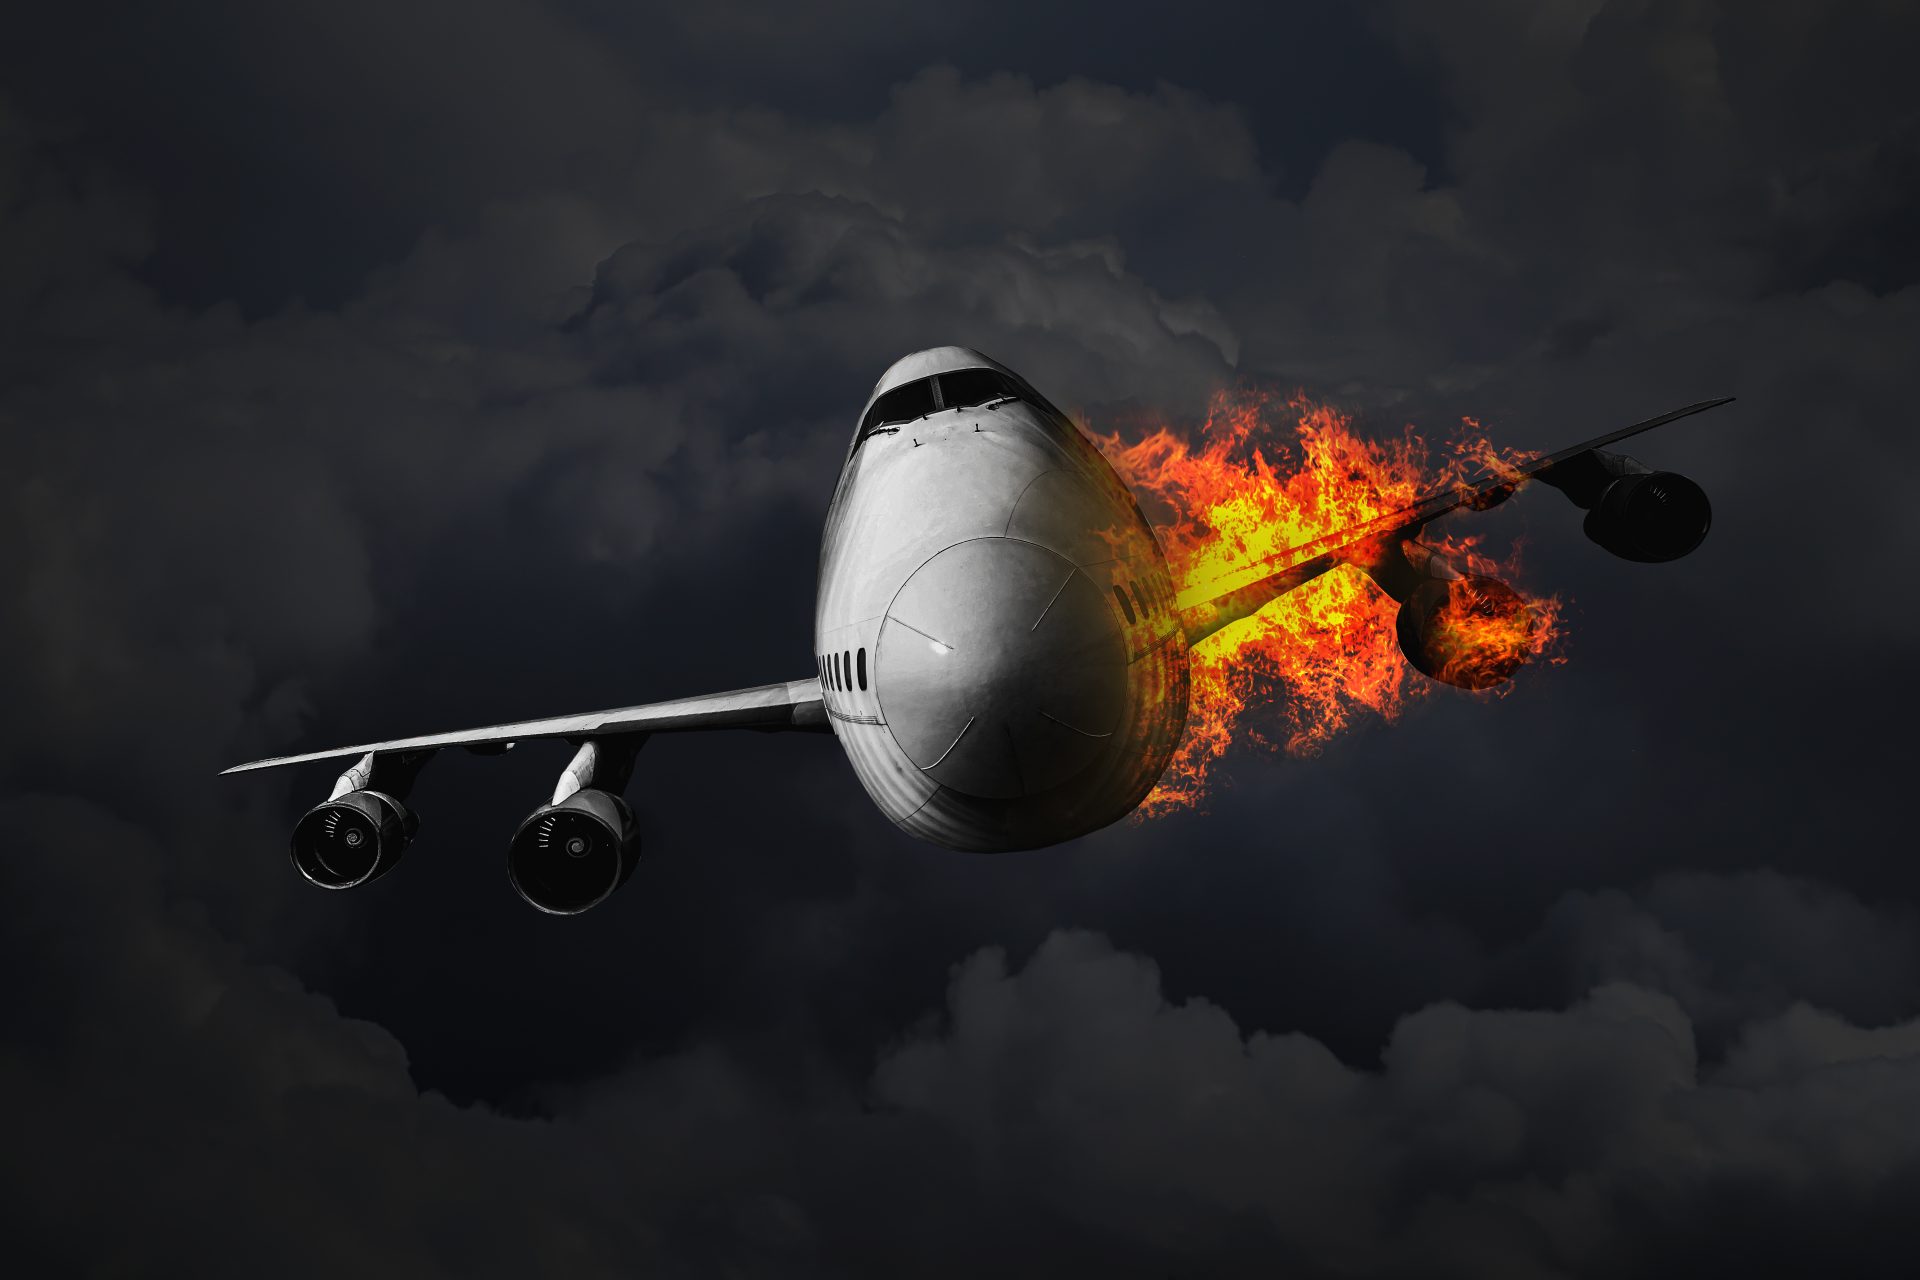 Quelles sont les compagnies aériennes qui ont connu le plus grand nombre d'accidents ?